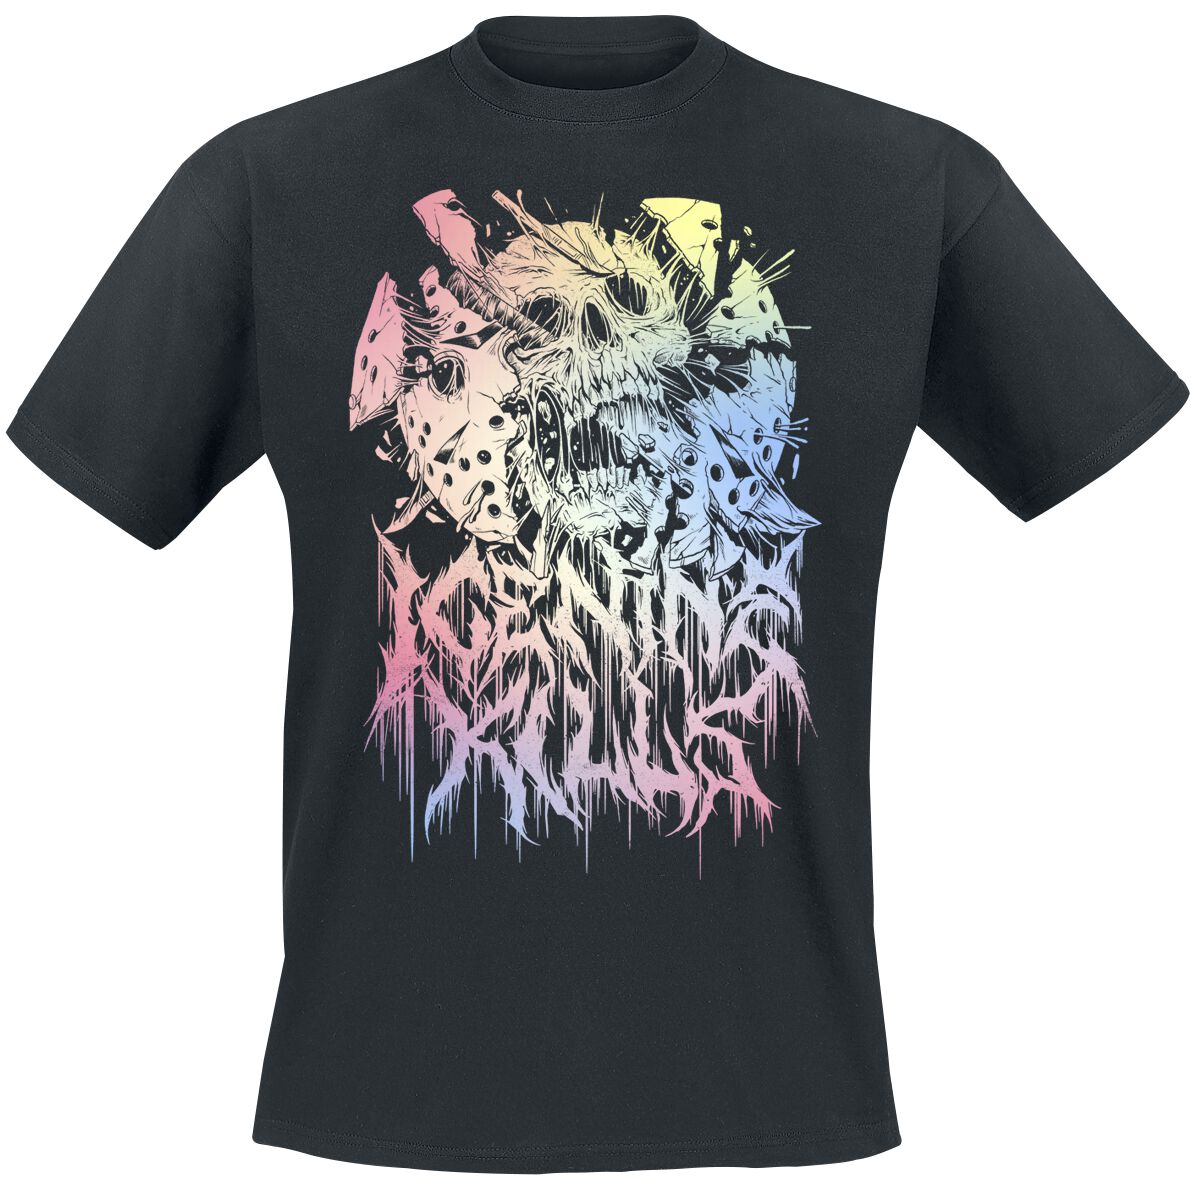 Ice Nine Kills T-Shirt - Pastel Skull - M bis 4XL - für Männer - Größe XXL - schwarz  - Lizenziertes Merchandise!